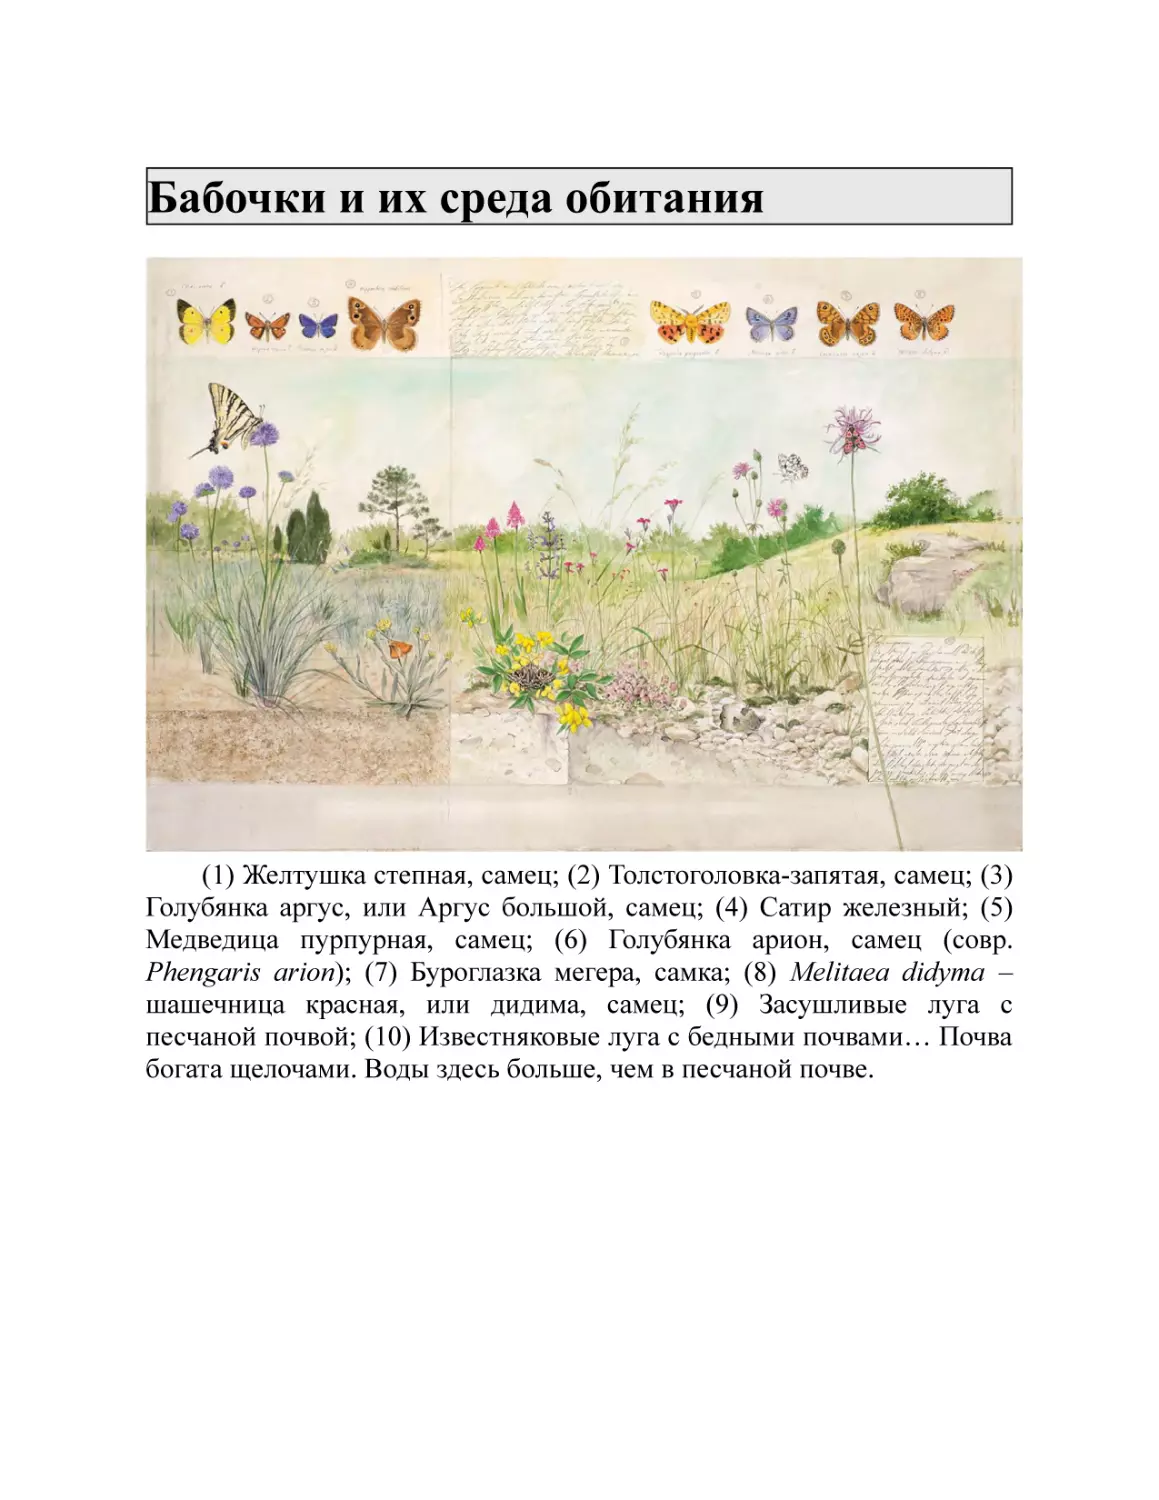 Бабочки и их среда обитания